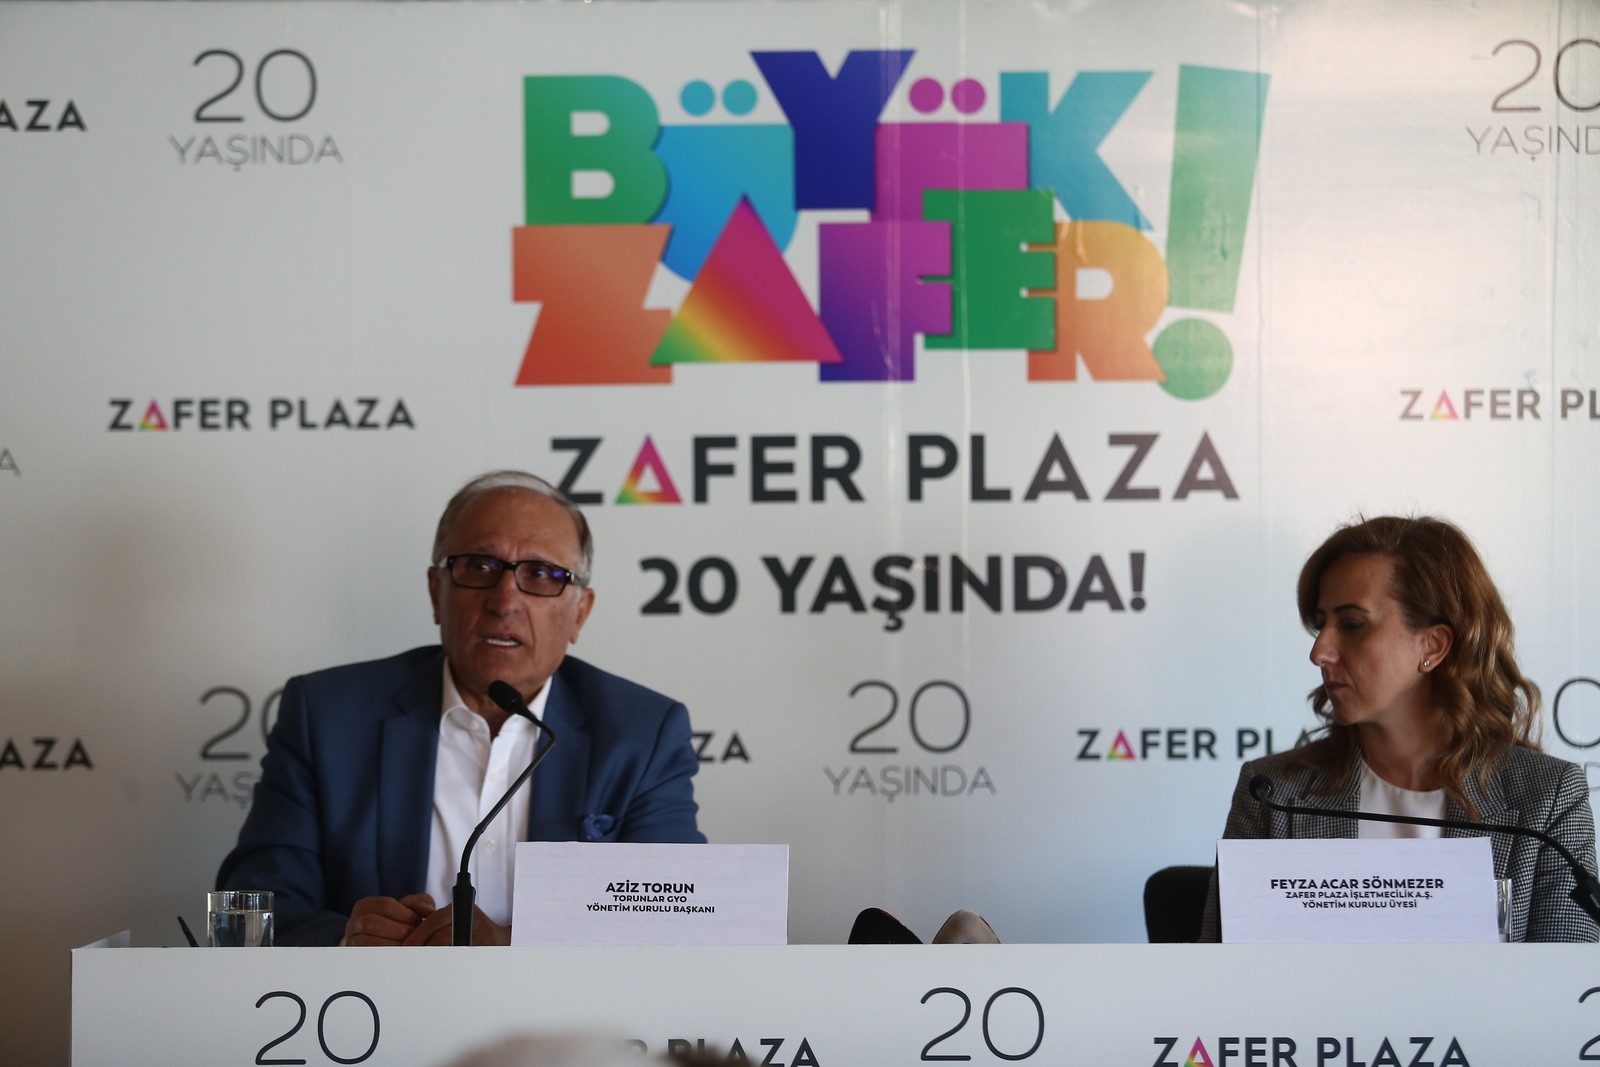 Zafer Plaza 20 yılda 250 milyon ziyaretçi ağırladı-745 etkinliği yapıldı